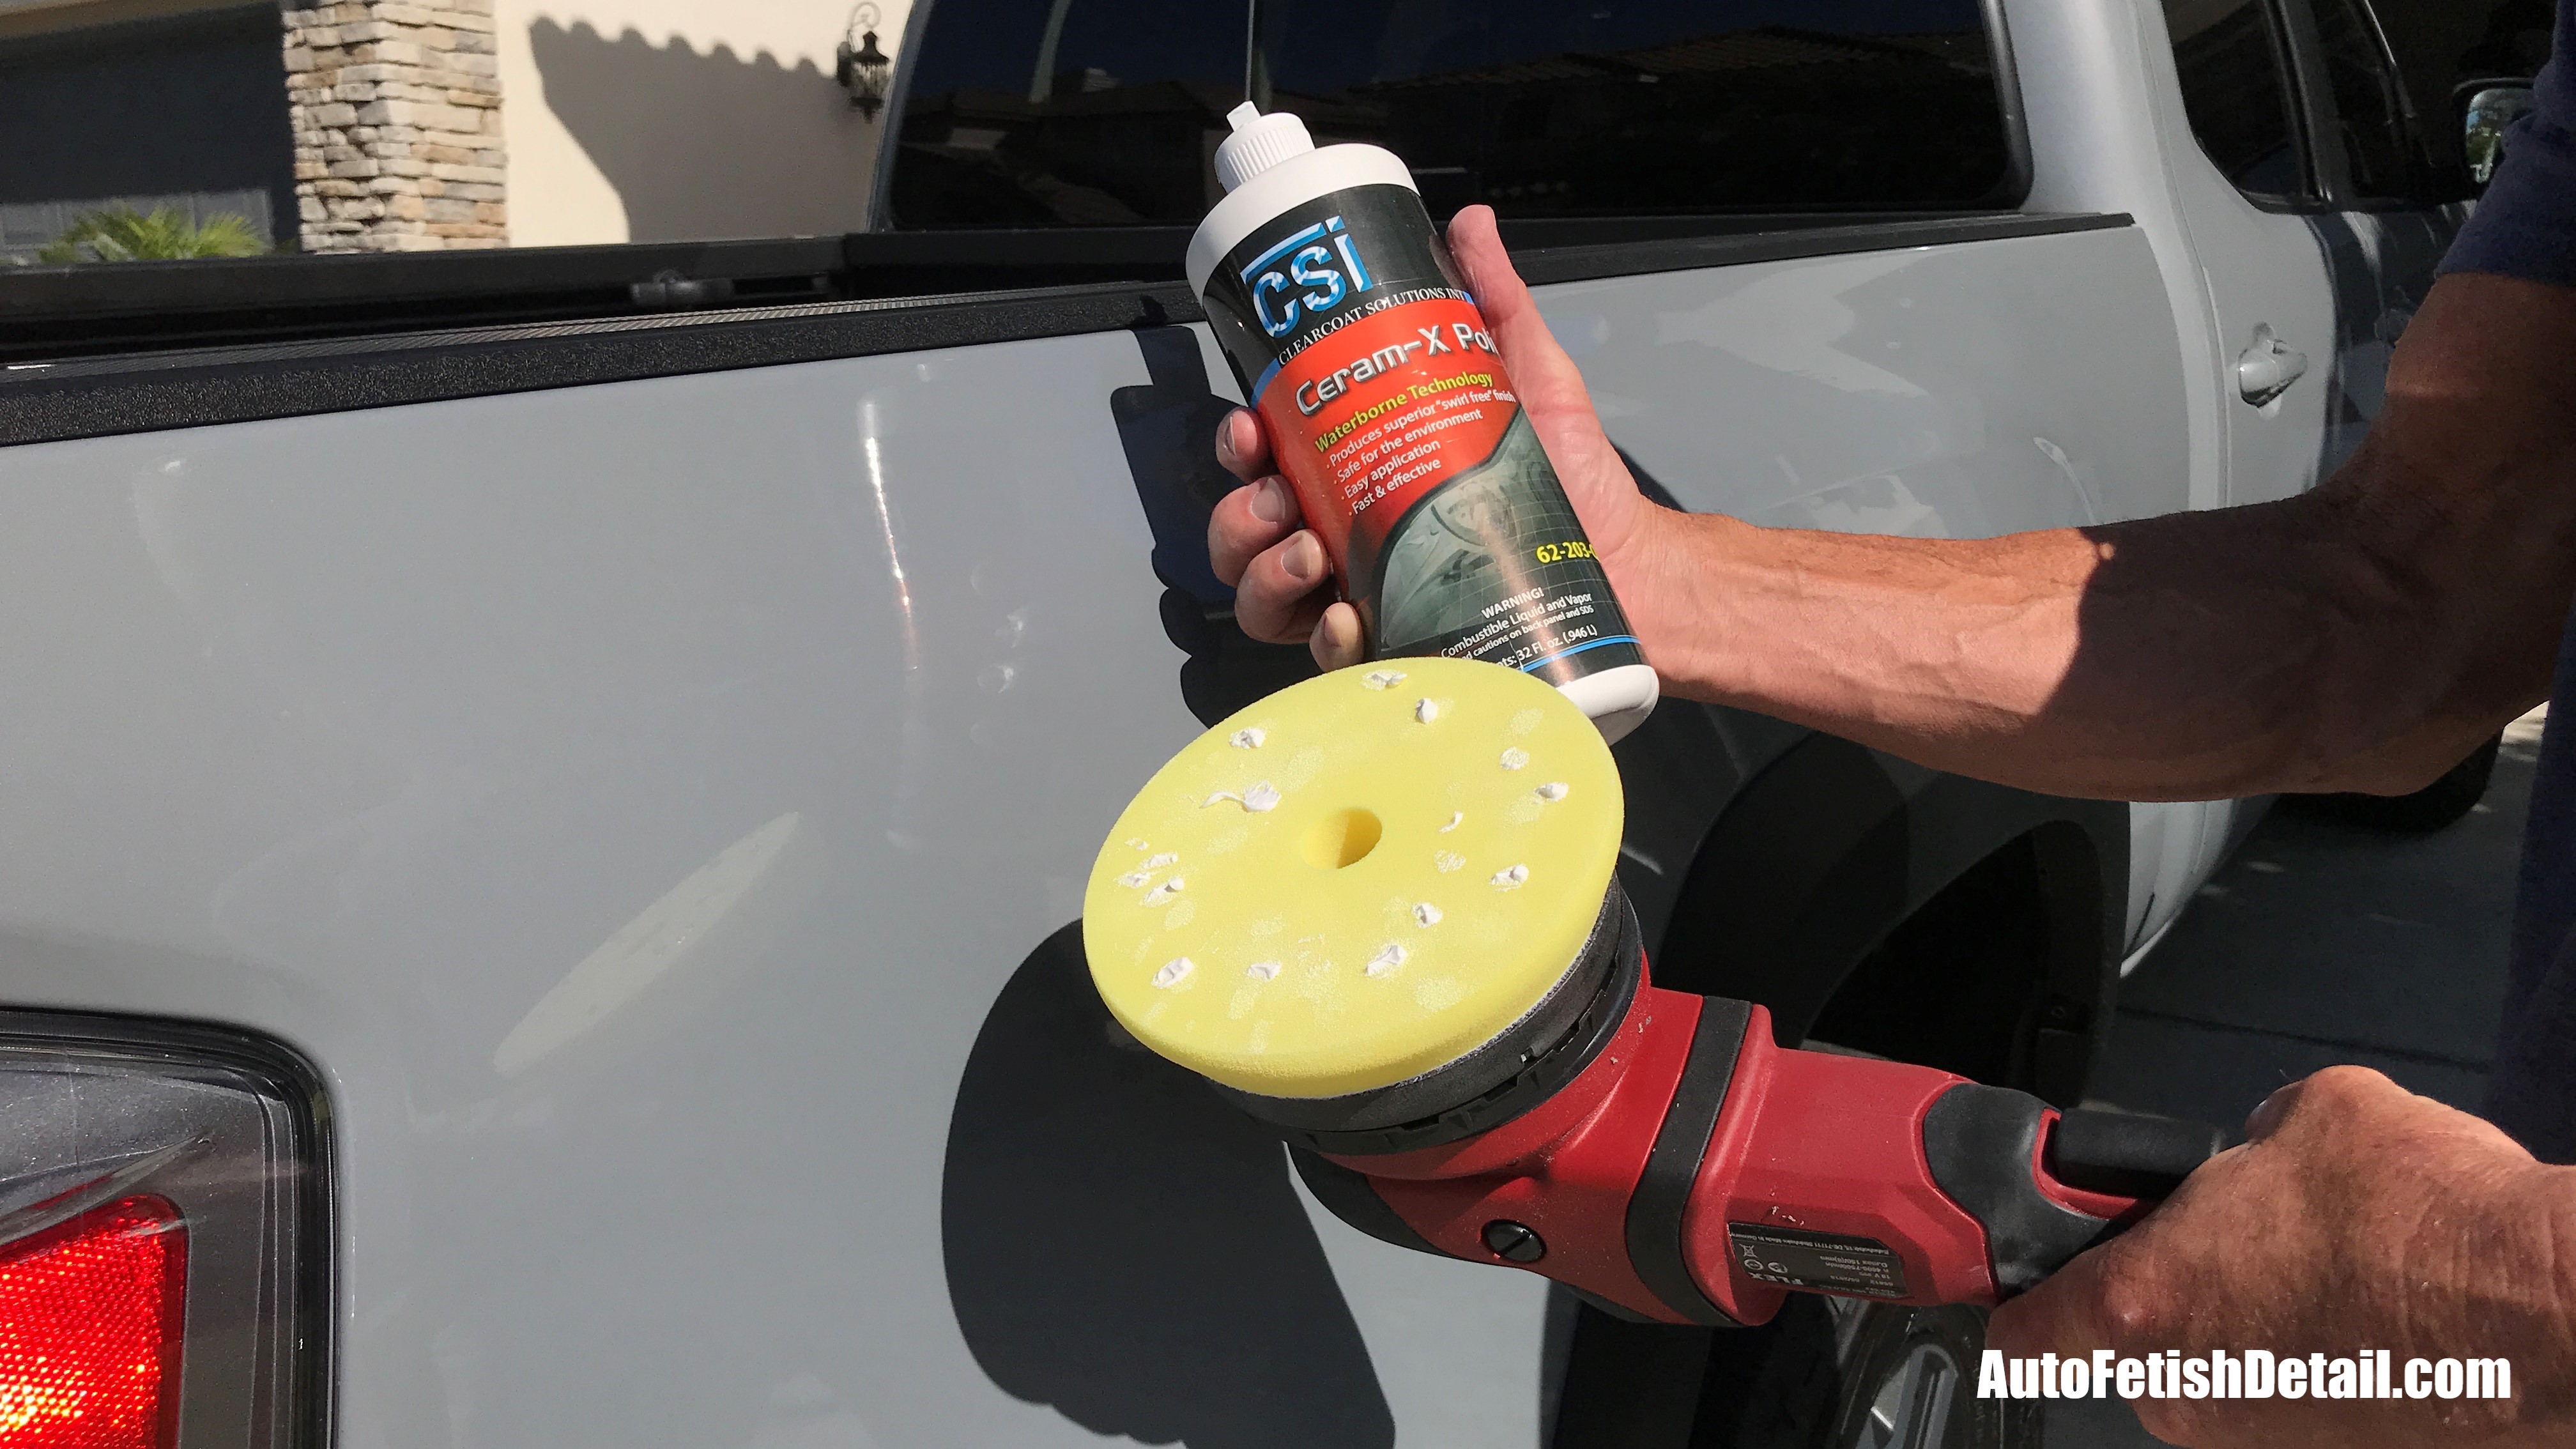 Buffer vs Hand Polish: What's Better for Car Polishing?